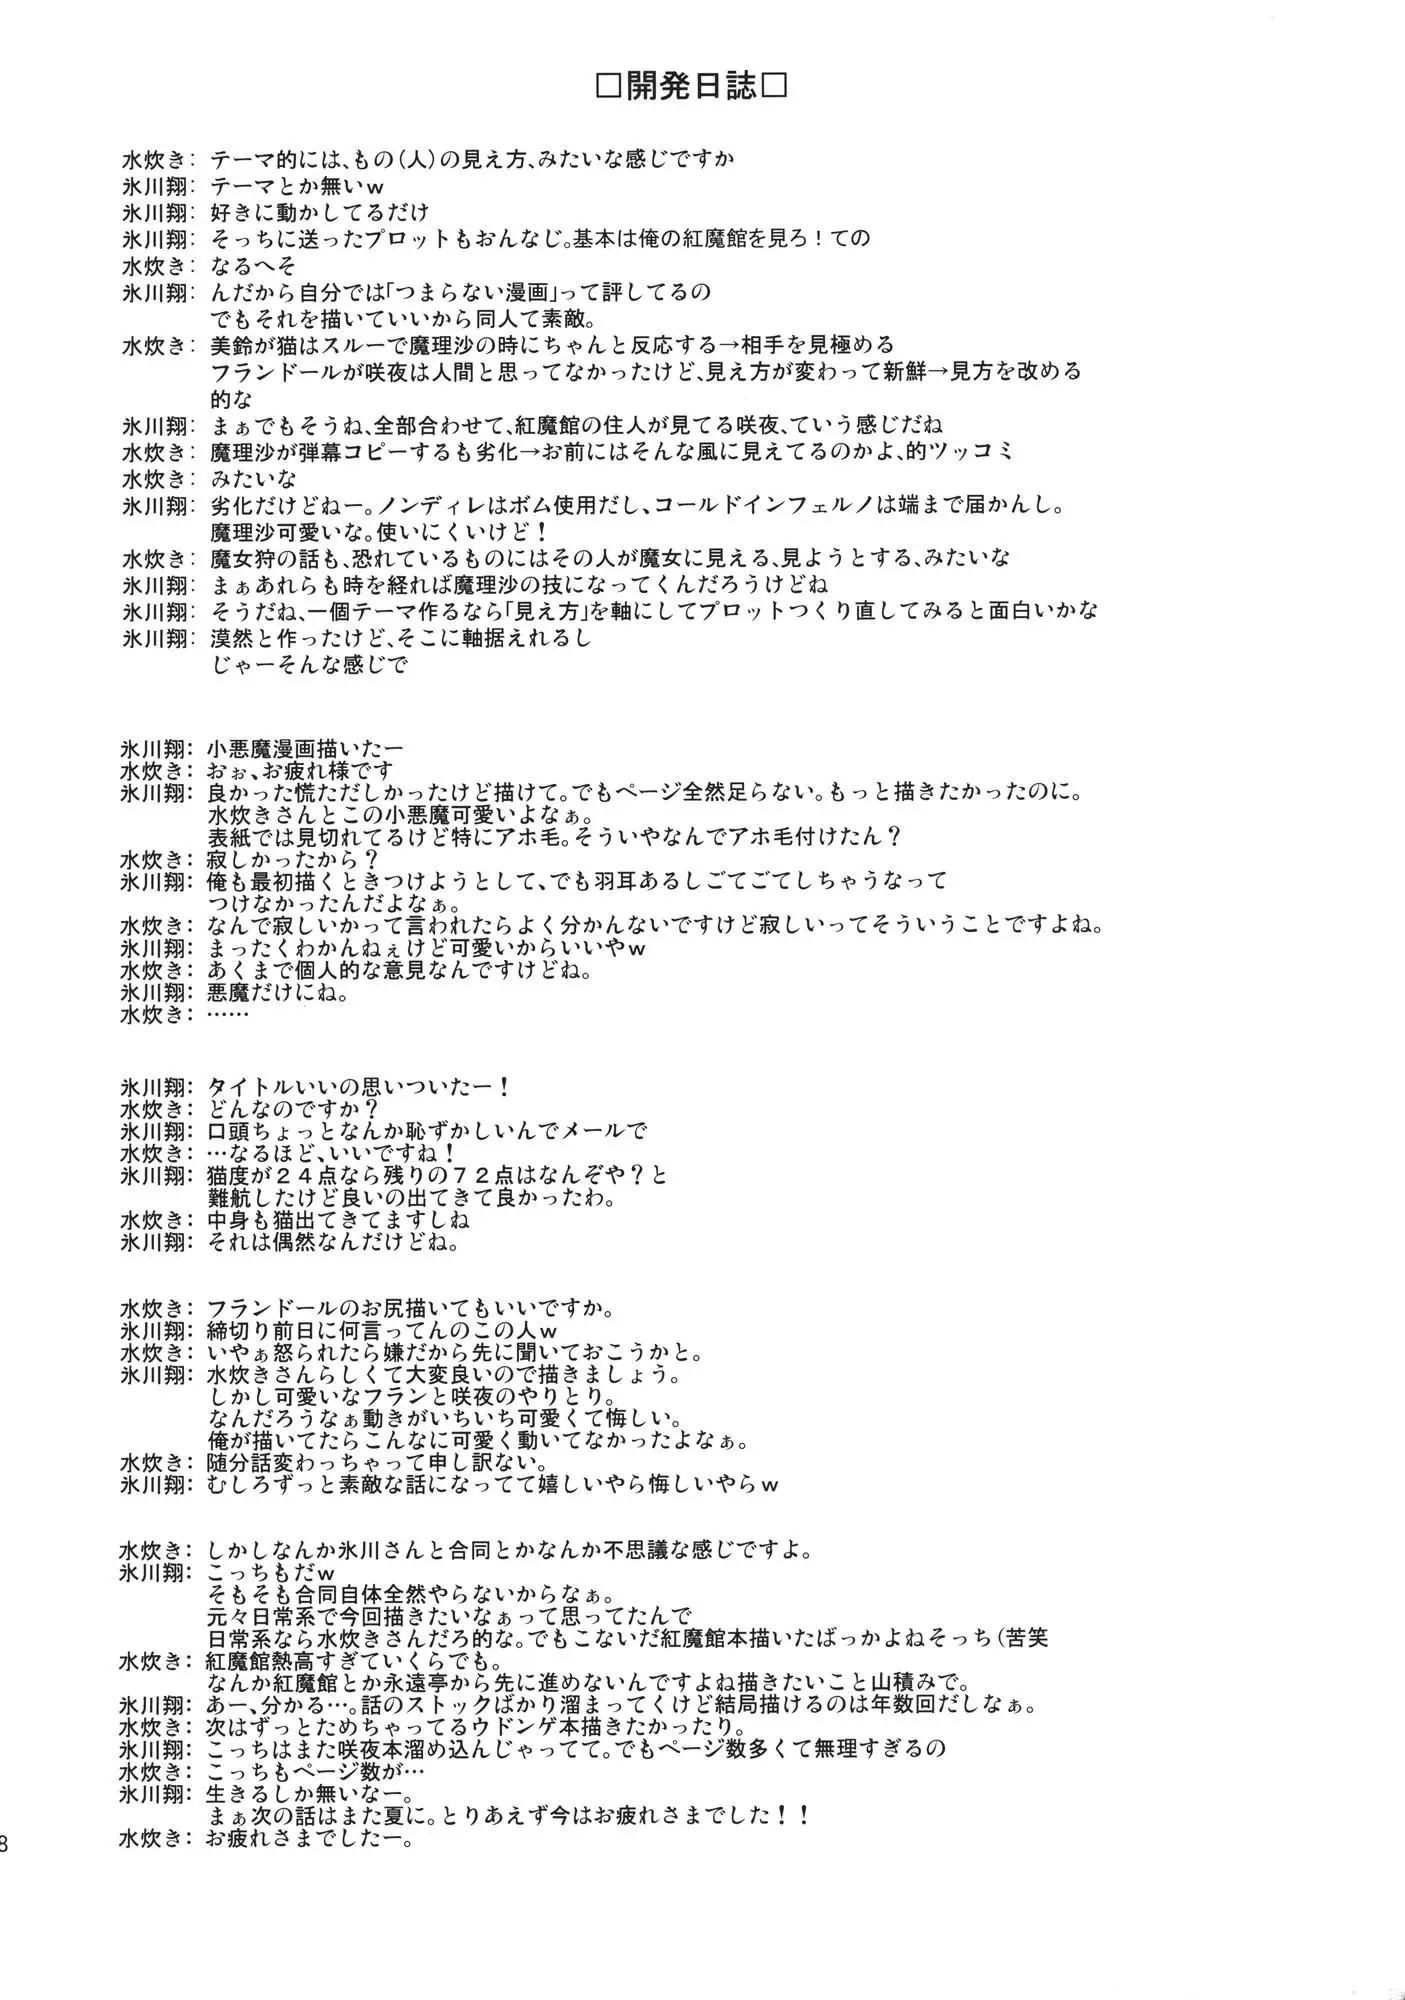 Touhou - Neko Do 24/96=? (Doujinshi) - 2 page 19-9417992b